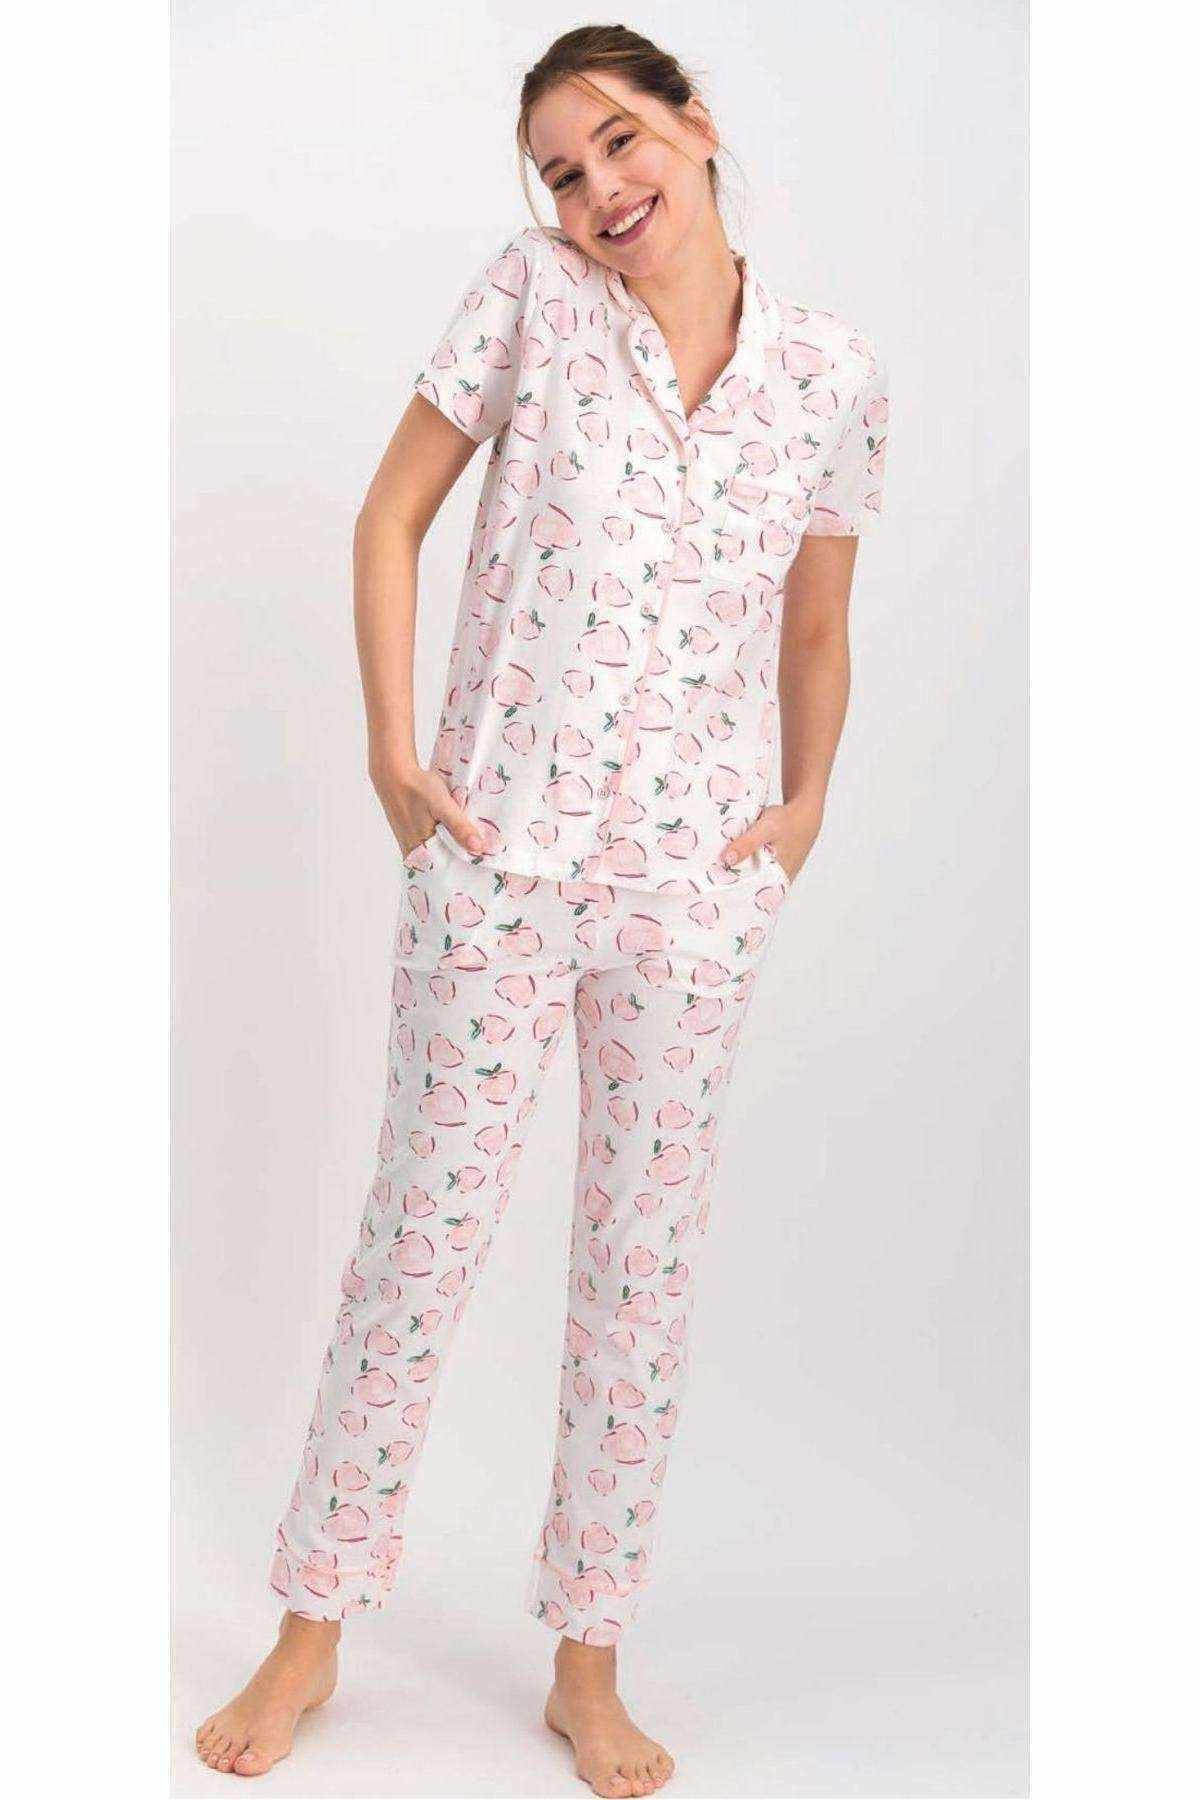 Pierre Cardin Pierrecardin 7690 Gömlek Pijama Takımı - Pc7690-krem-s